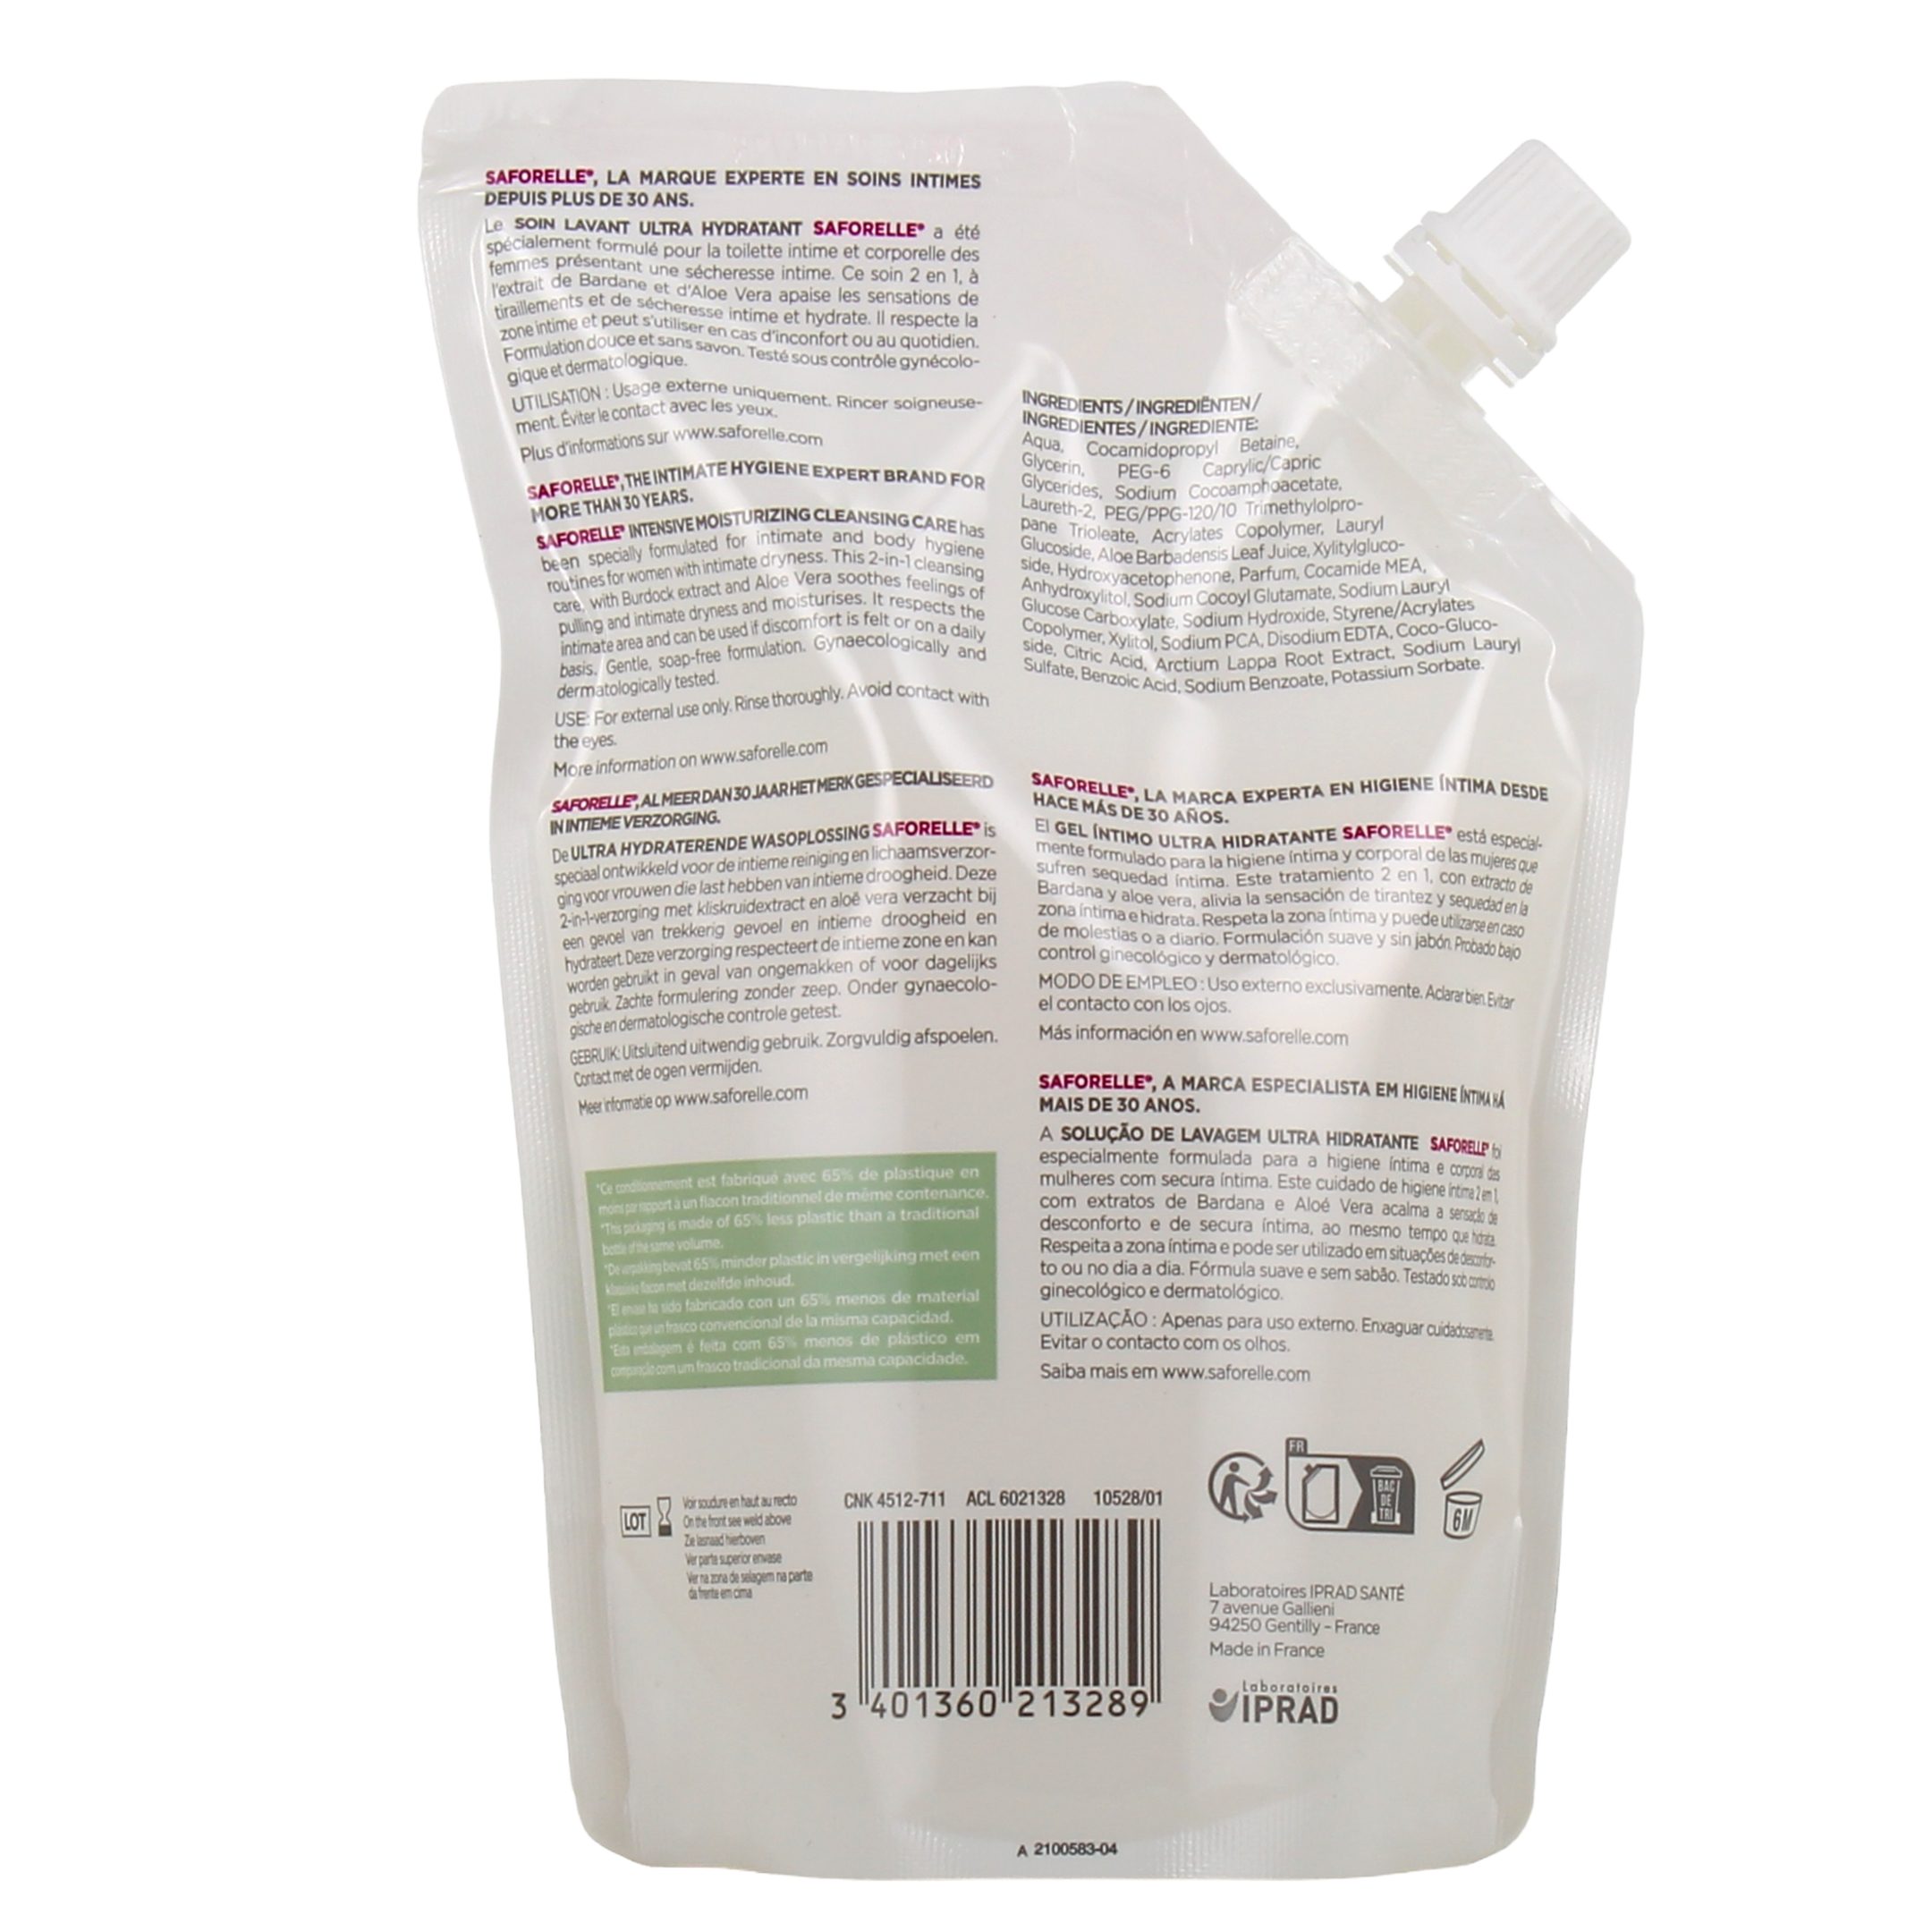 Saforelle - Soin lavant Ultra hydratant Muqueuses et peaux sèches (250 ml)